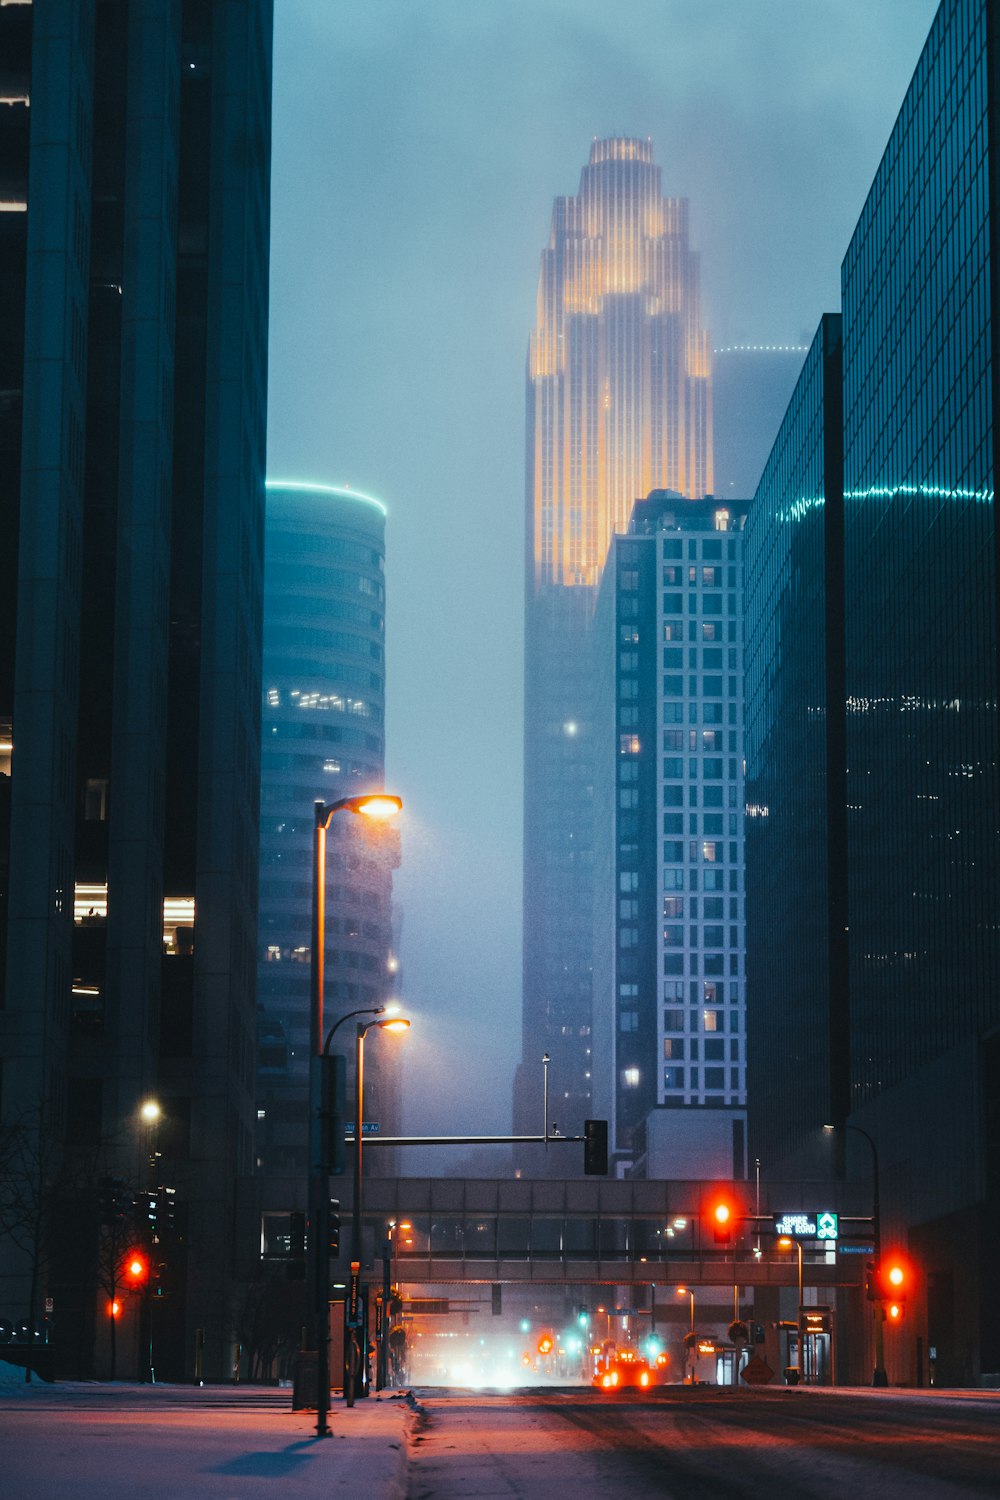 Voitures sur la route près des immeubles de grande hauteur pendant la nuit